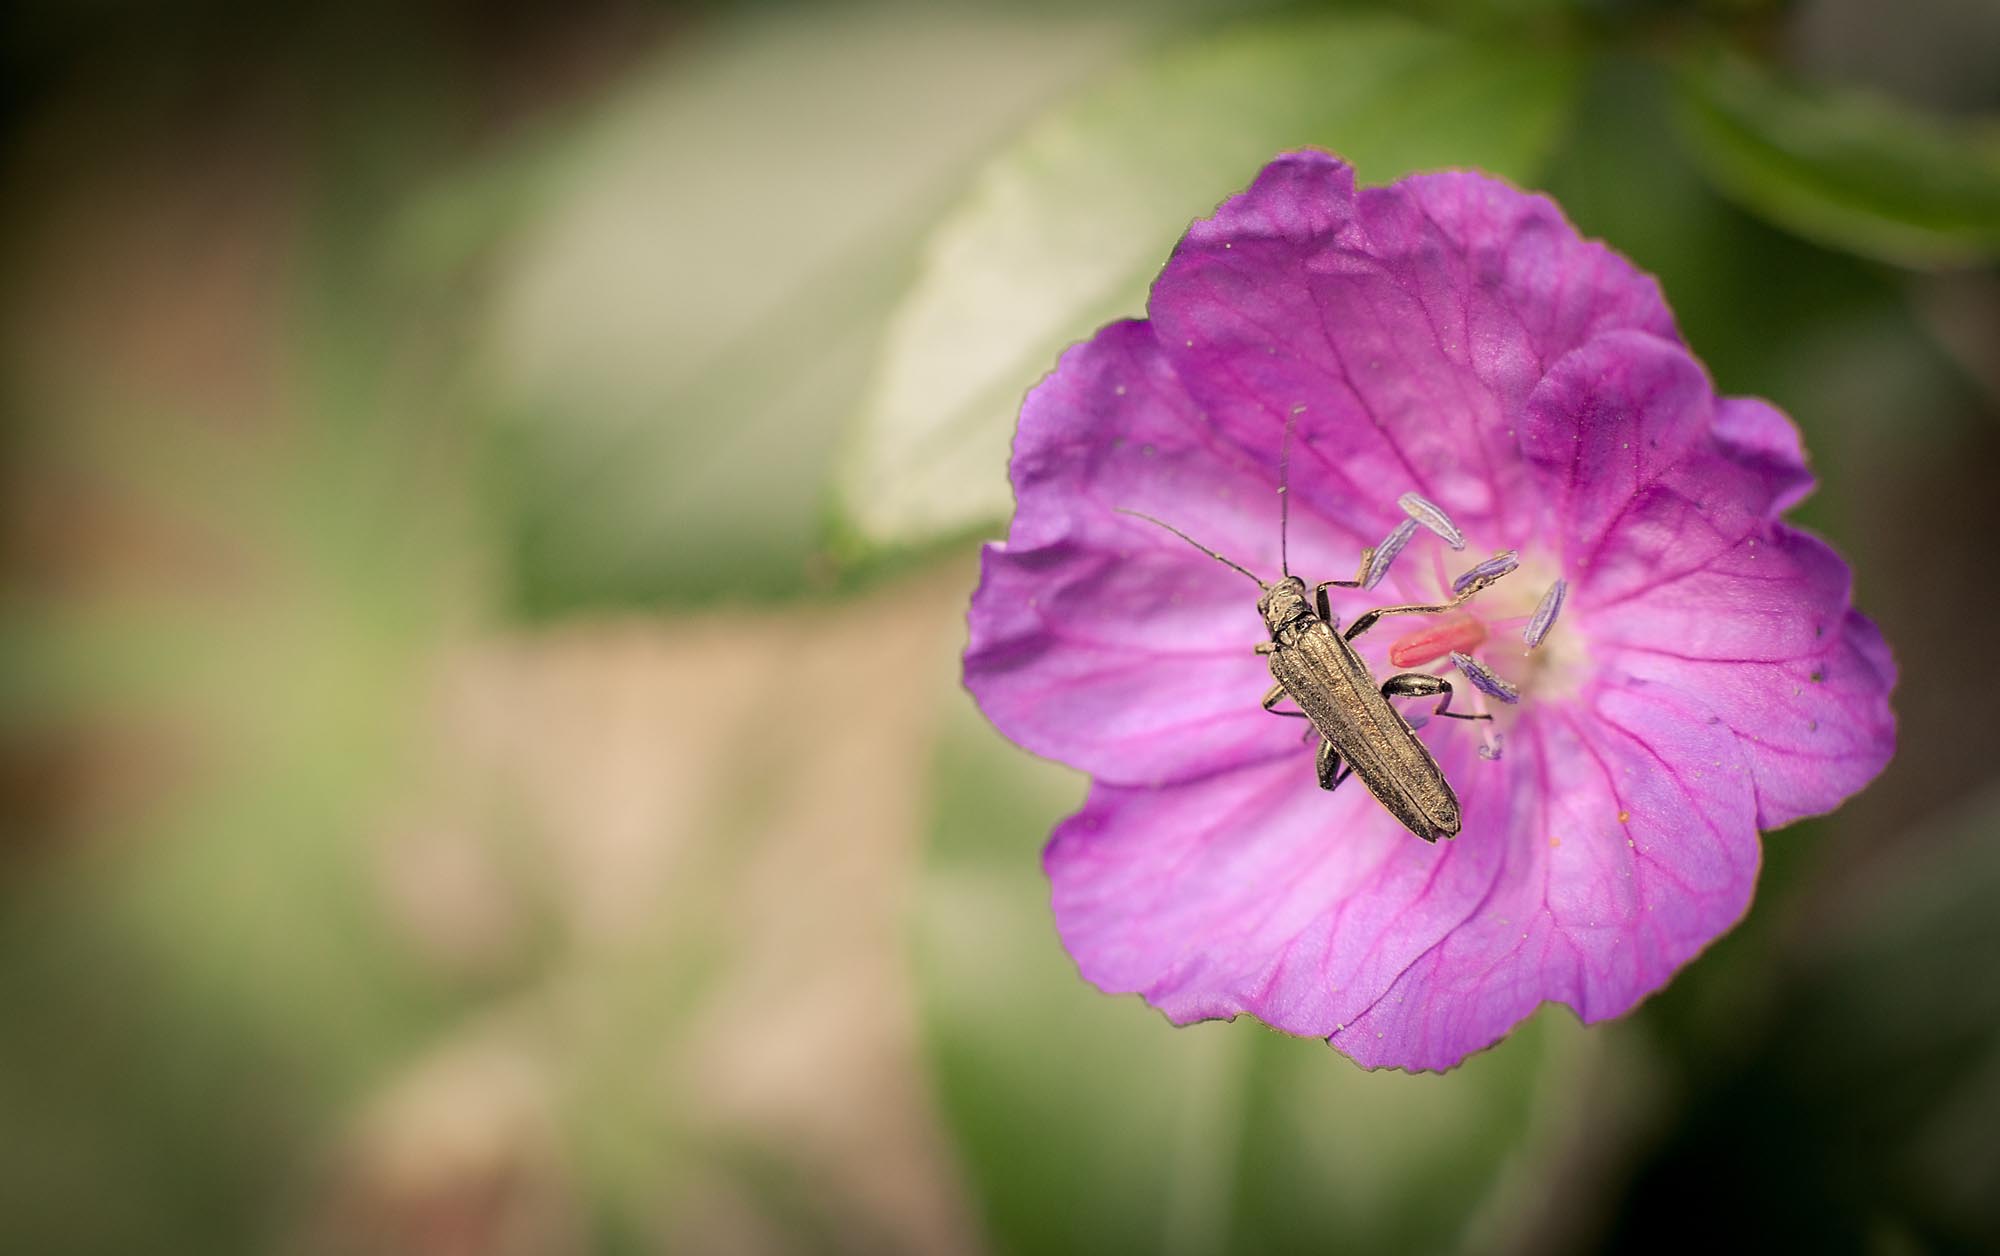 Ein Käfer auf einer Blume, fotografiert mit einem 50mm-Objektiv mit Zwischenring. Mit dieser Brennweite muss man schon sehr nah an das Motiv heran - die Gefahr, dass es "wegflattert" ist sehr groß. Hier hatte ich Glück.